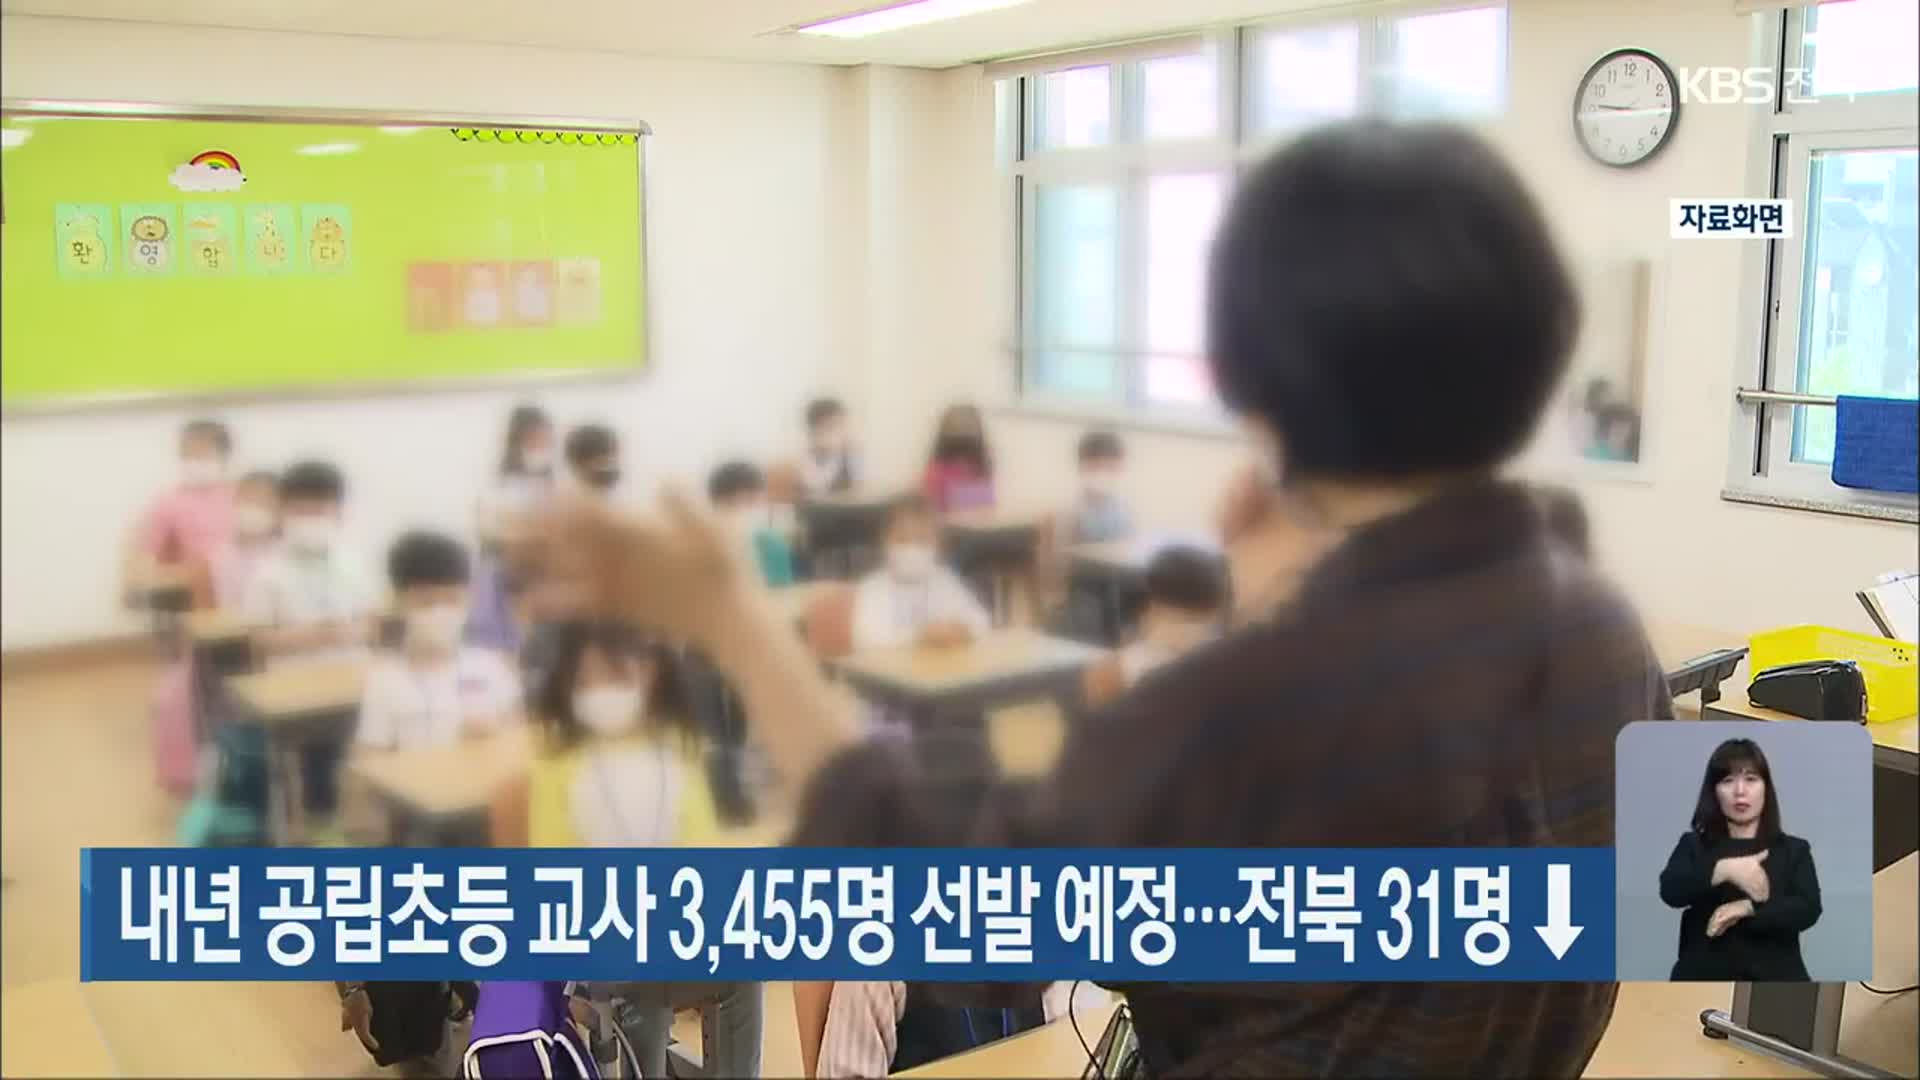 내년 공립초등 교사 3,455명 선발 예정…전북 31명 ↓